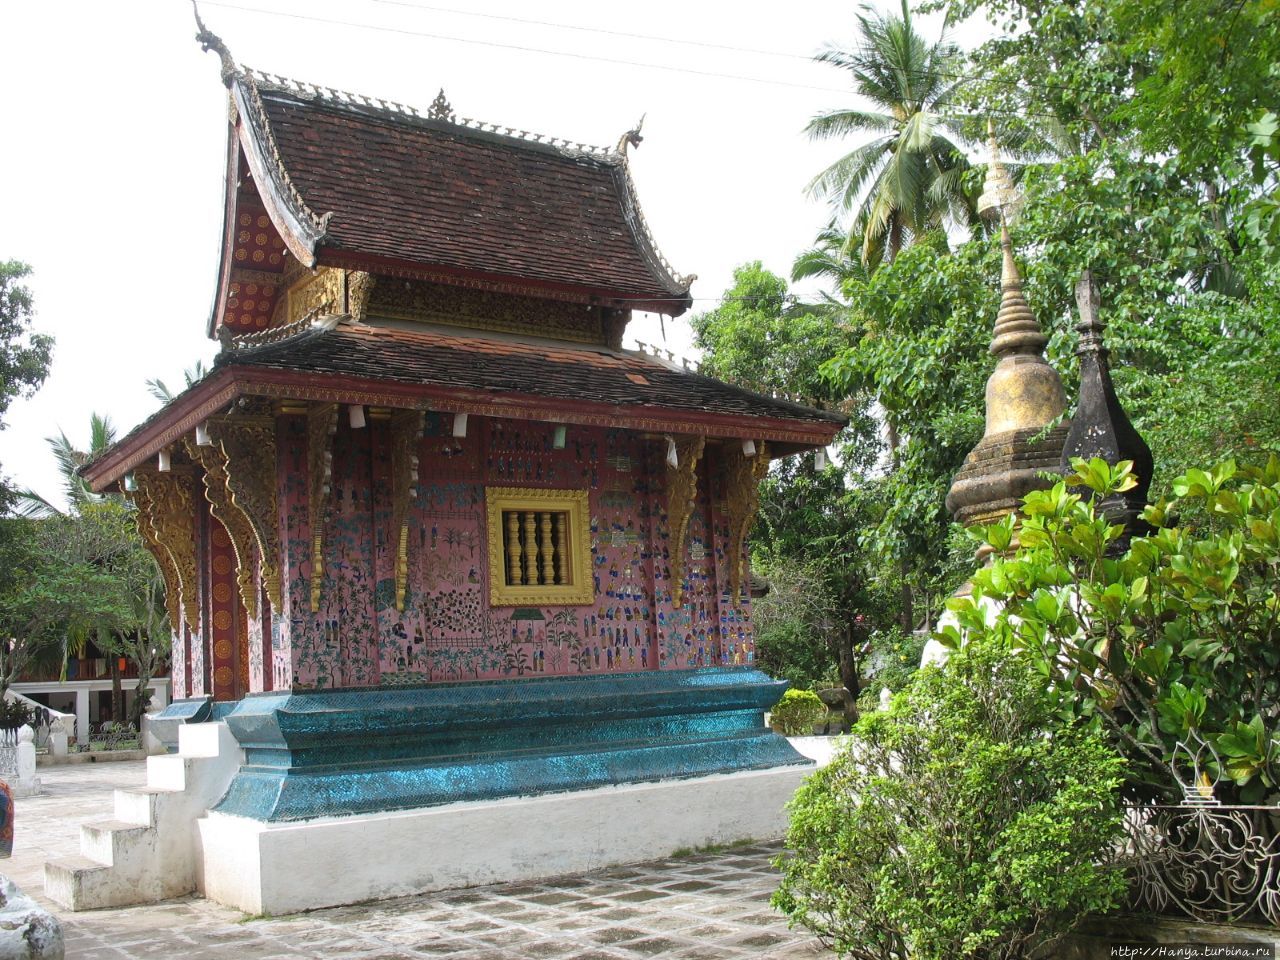 Хранилище Типитаки в Сиенгтхонг Вате / Wat Xieng Thong Tripitaka Library